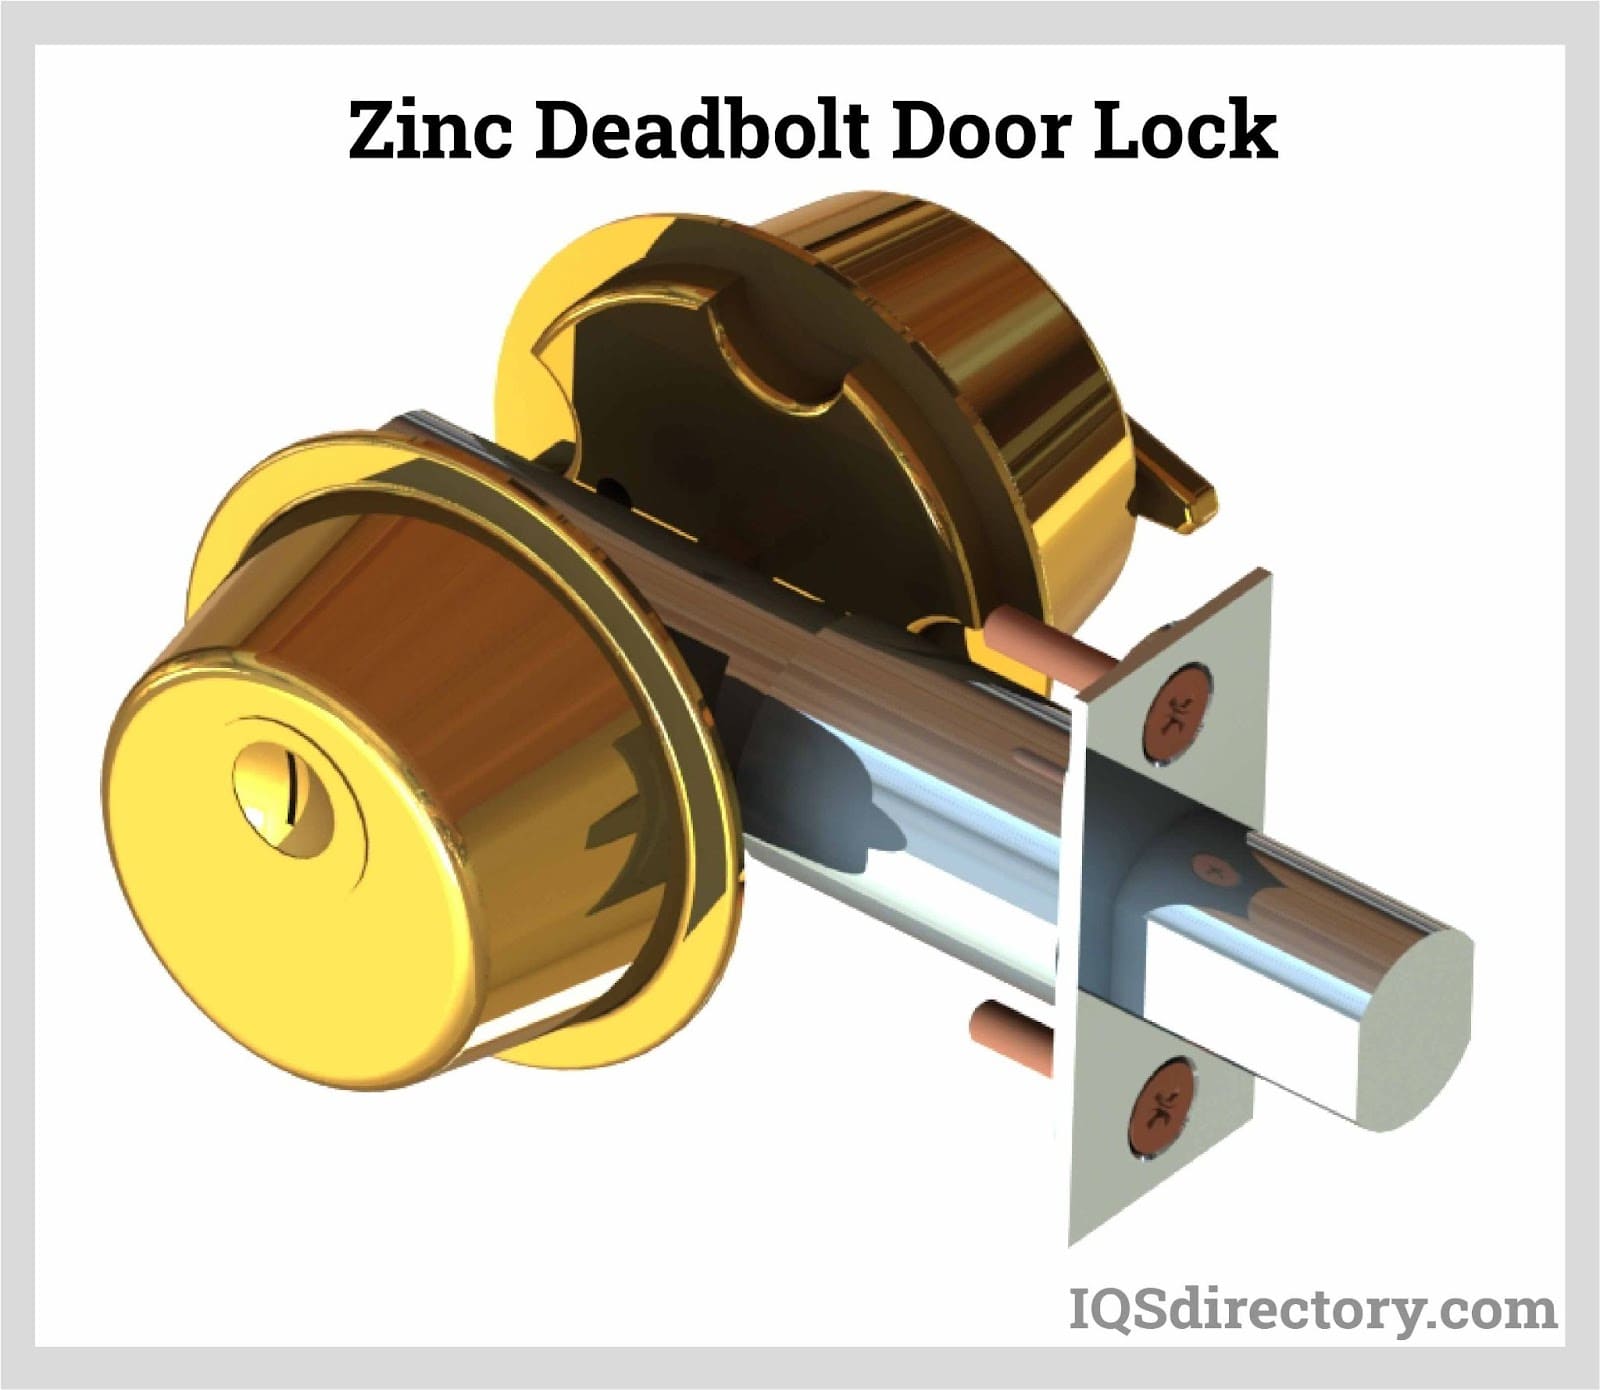 Zinc Deadbolt Door Lock